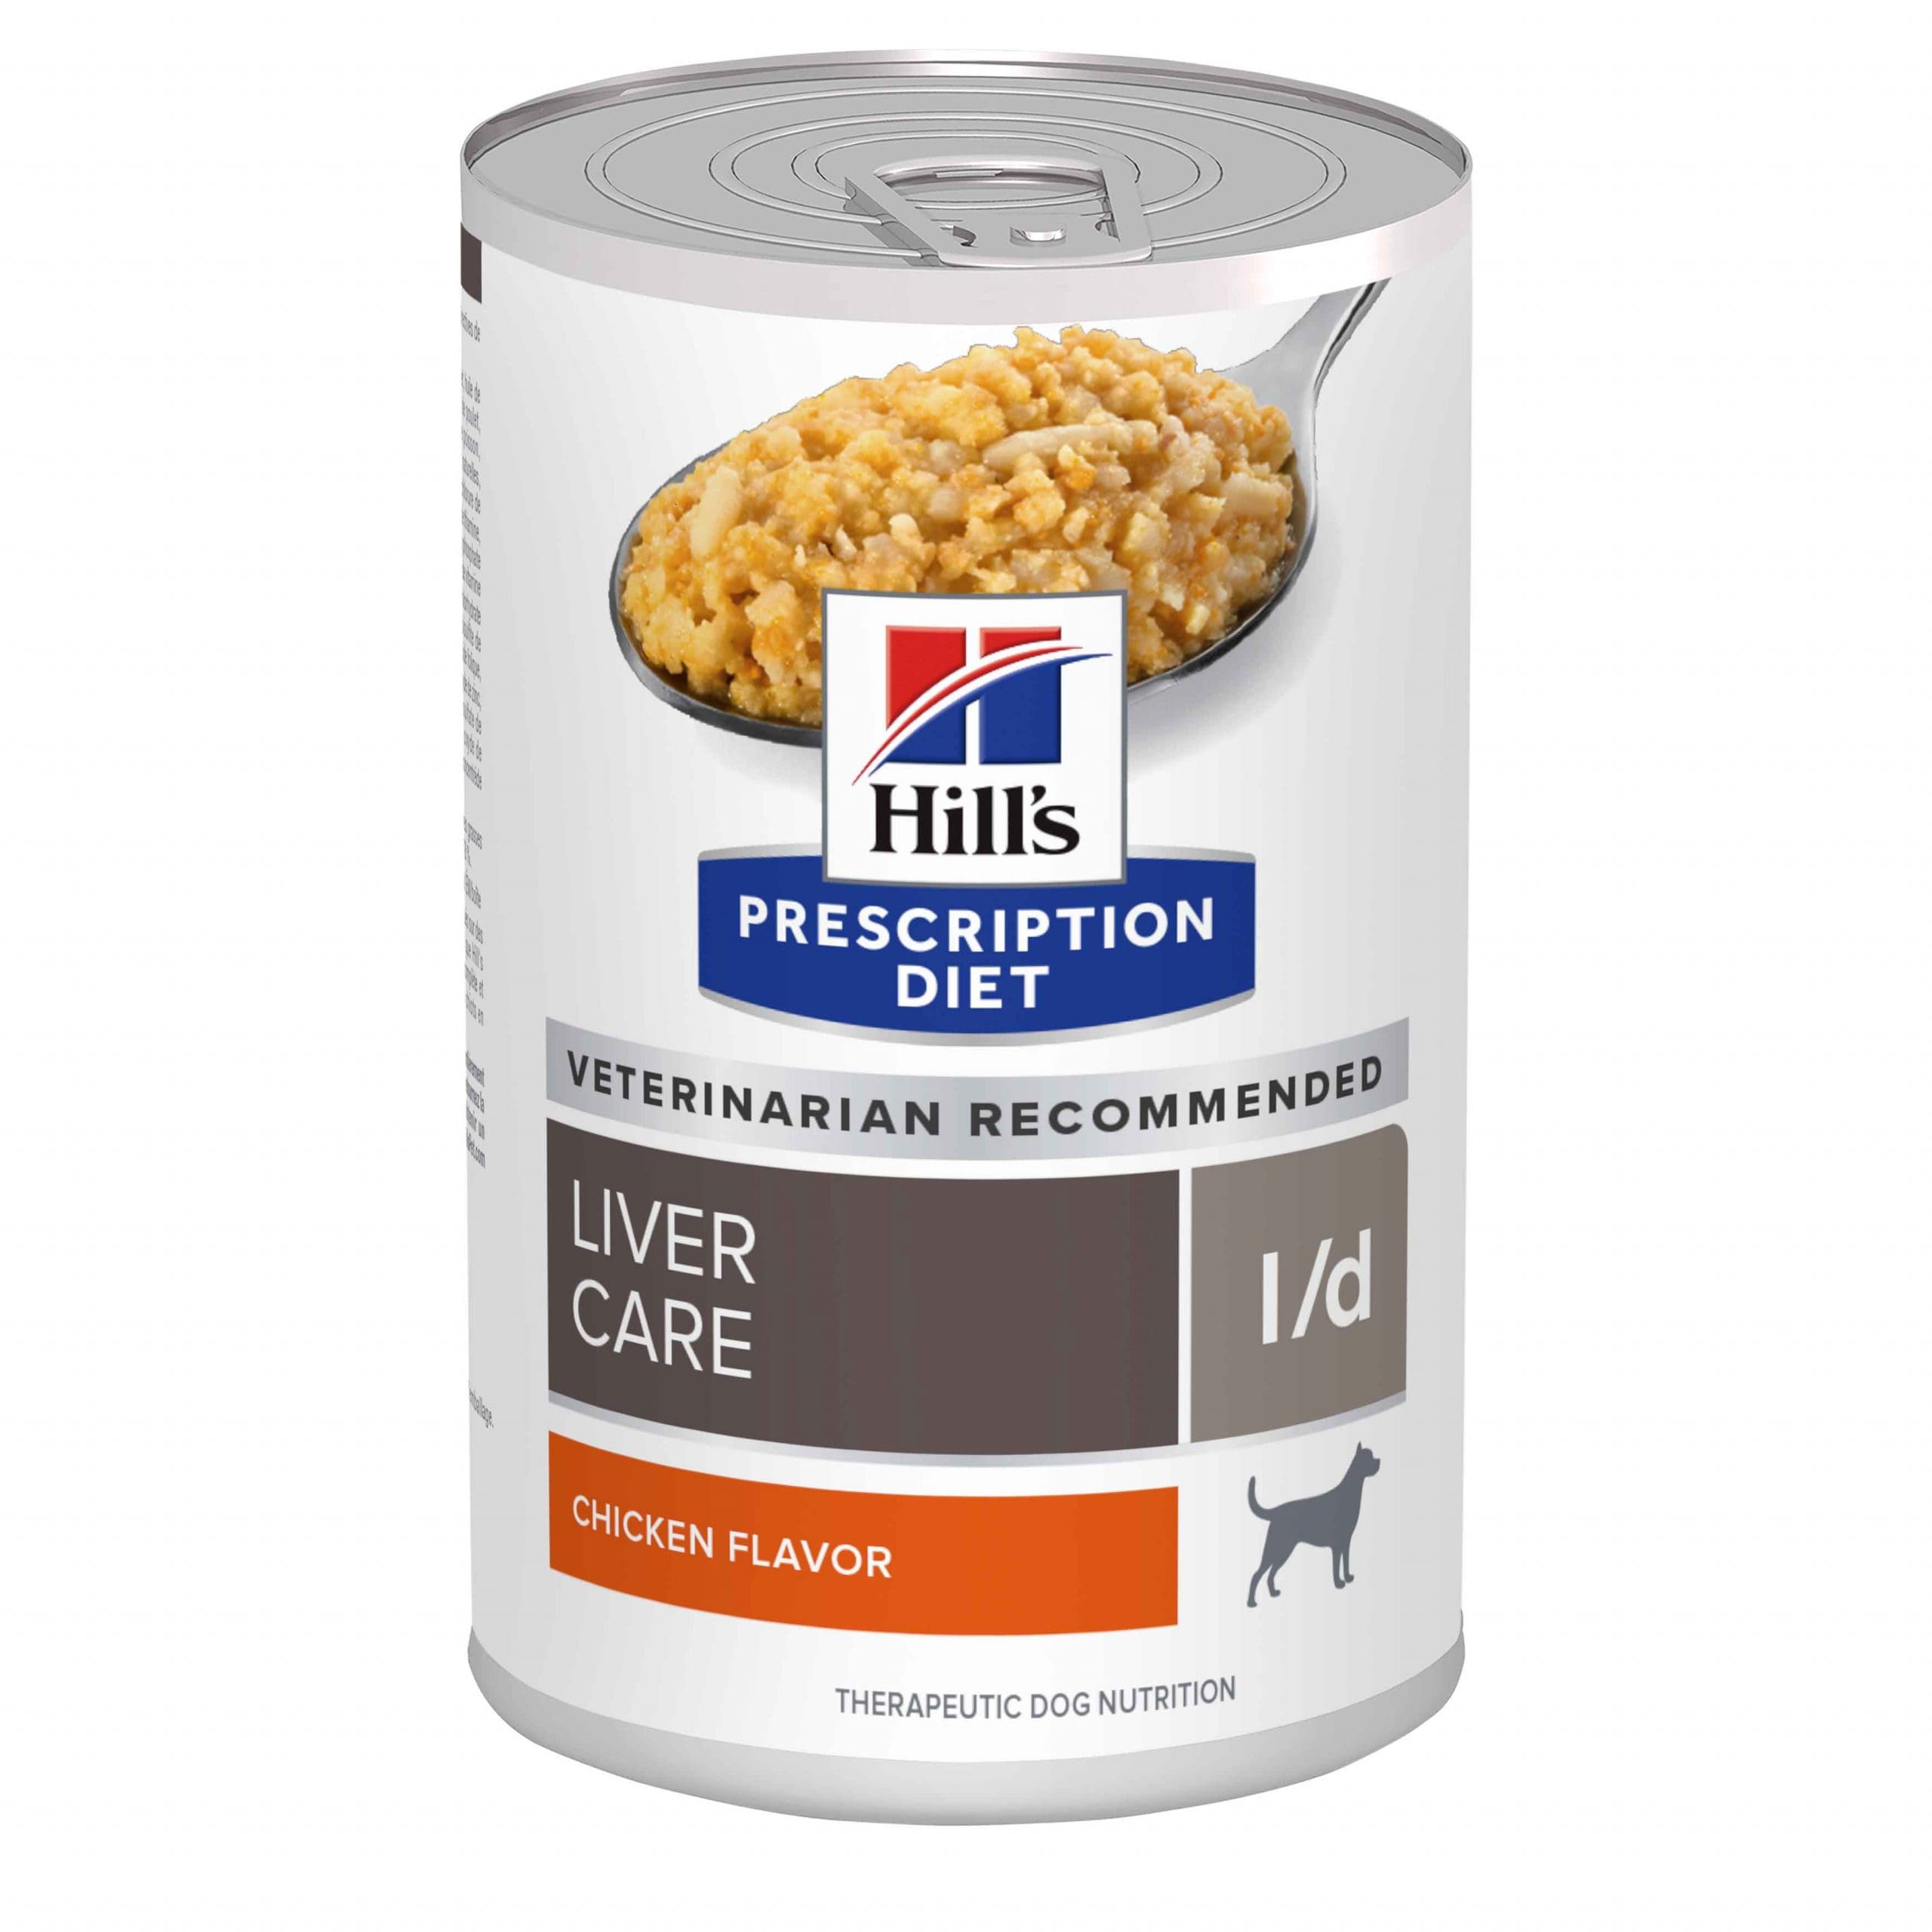 i:d liver canine húmedo grande